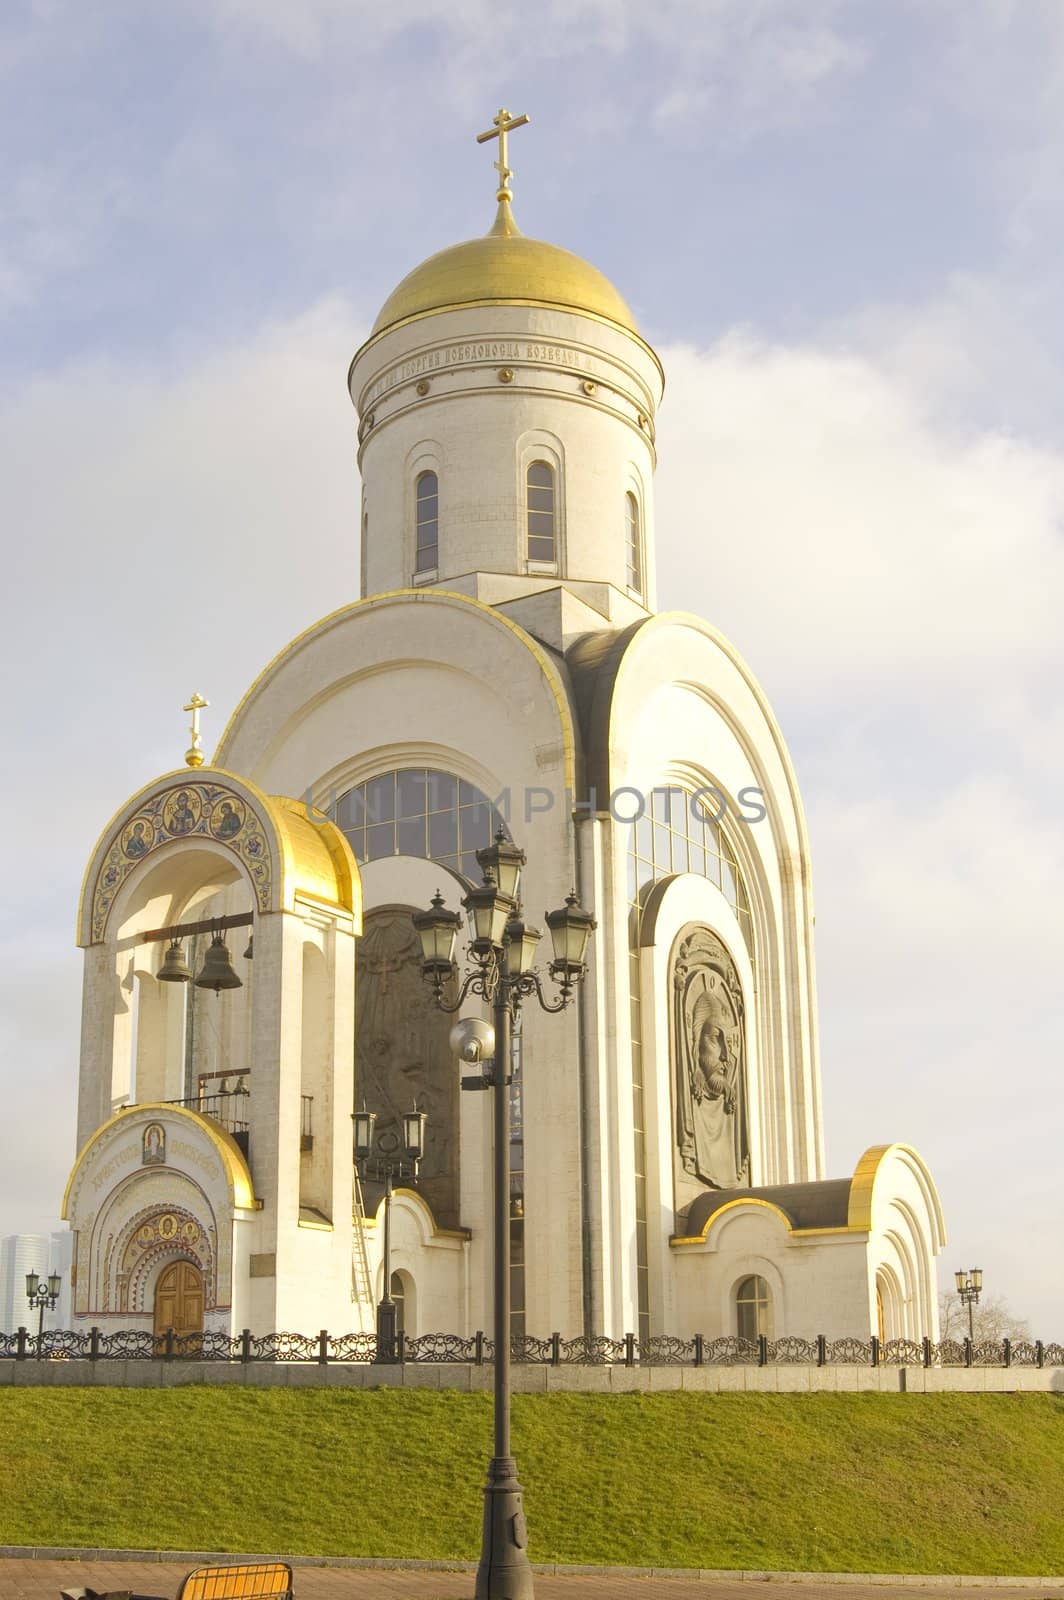 St. George Orthodox Church On Poclonnaya 
Gora In Moscow.